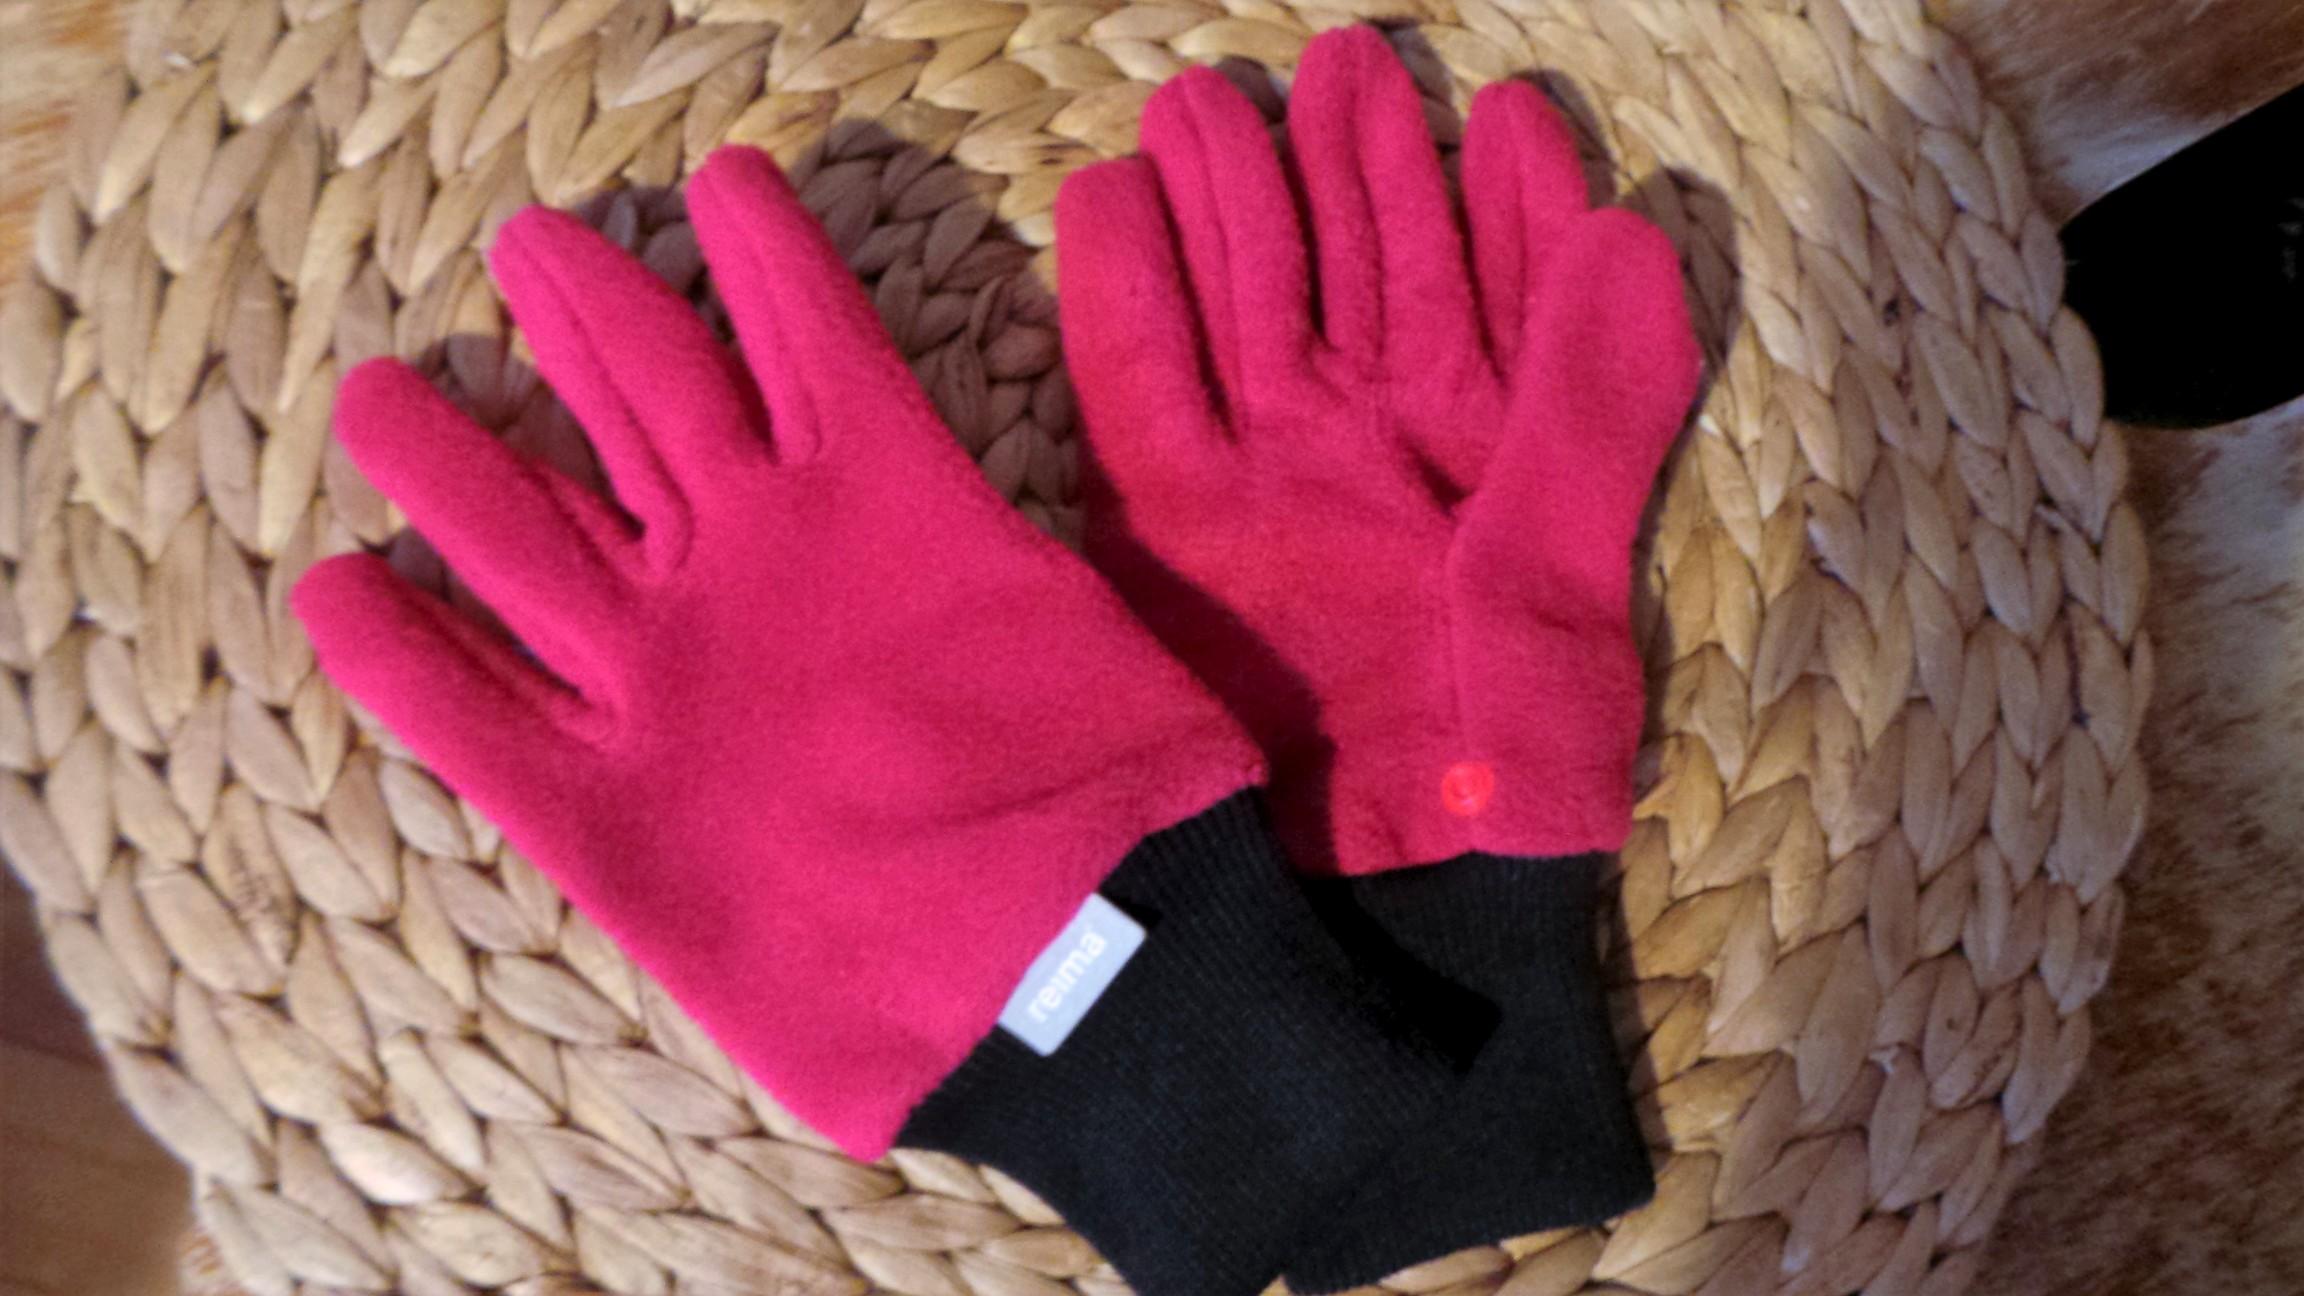 SUOSITELKAA LÄMPIMIÄ hanskoja 1,5v jolla kädet tosi kylmät aina, KIIITOOOS!